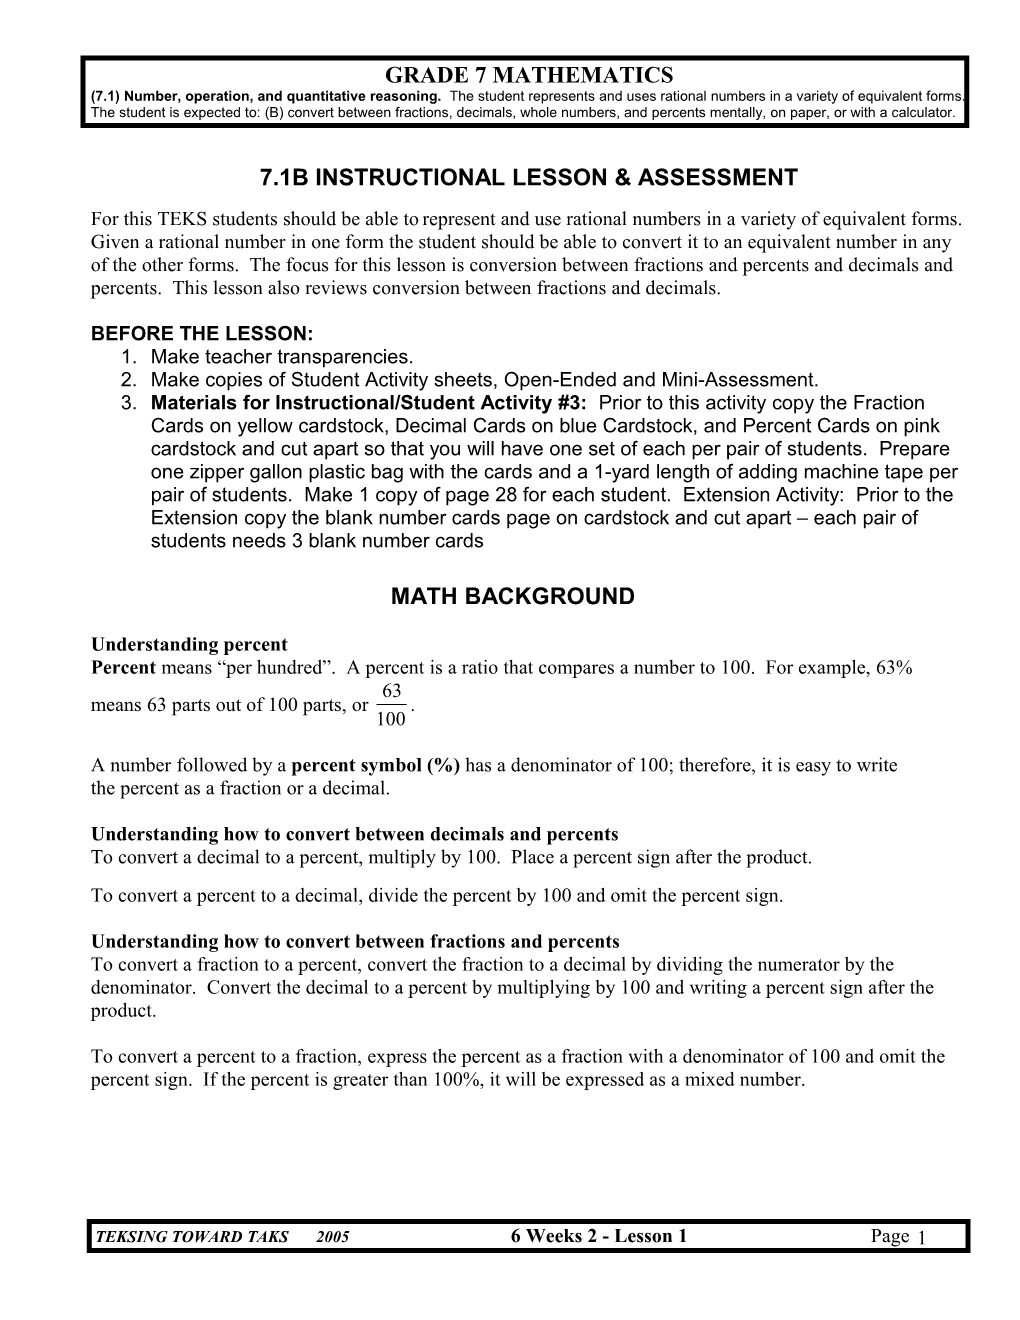 7.1B Instructional Lesson & Assessment